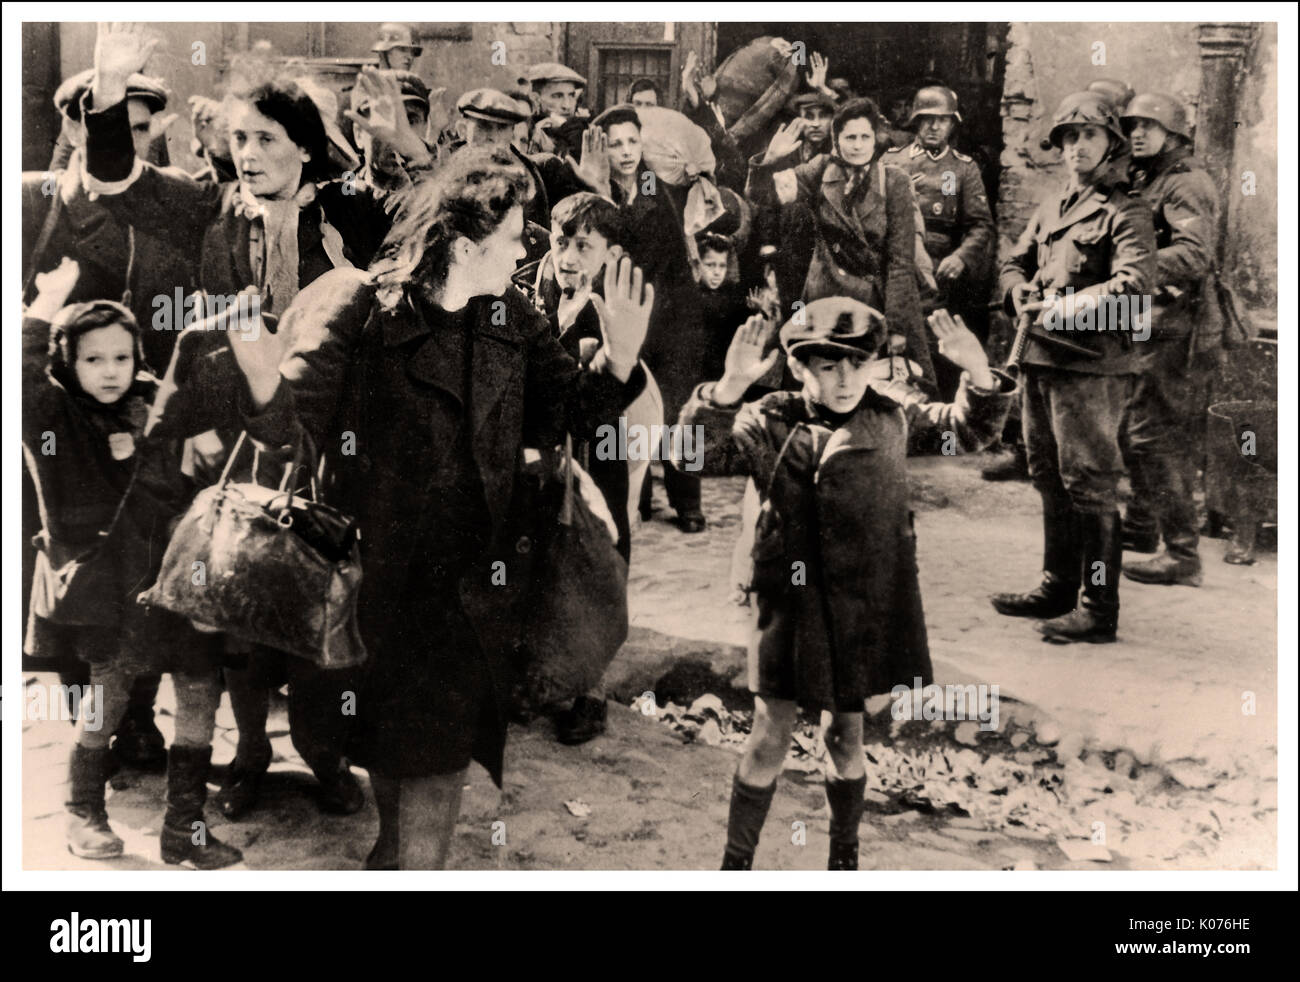 UN GARÇON GHETTO DE VARSOVIE REND DES FEMMES et DES ENFANTS JUIFS cette image poignante de WW2 montre des hommes juifs, des femmes et des enfants du ghetto de Varsovie, qui se rendent aux soldats allemands après le courageux vaillant soulèvement. Évacuation du ghetto de Varsovie, utilisé comme preuve ( Rapport Stroop) pendant les procès de Nuremberg, 1945/6 Notez le petit garçon polonais en arrière-plan central avec une admirable défiance au photographe allemand nazi mettant sa langue à l'appareil-photo Banque D'Images